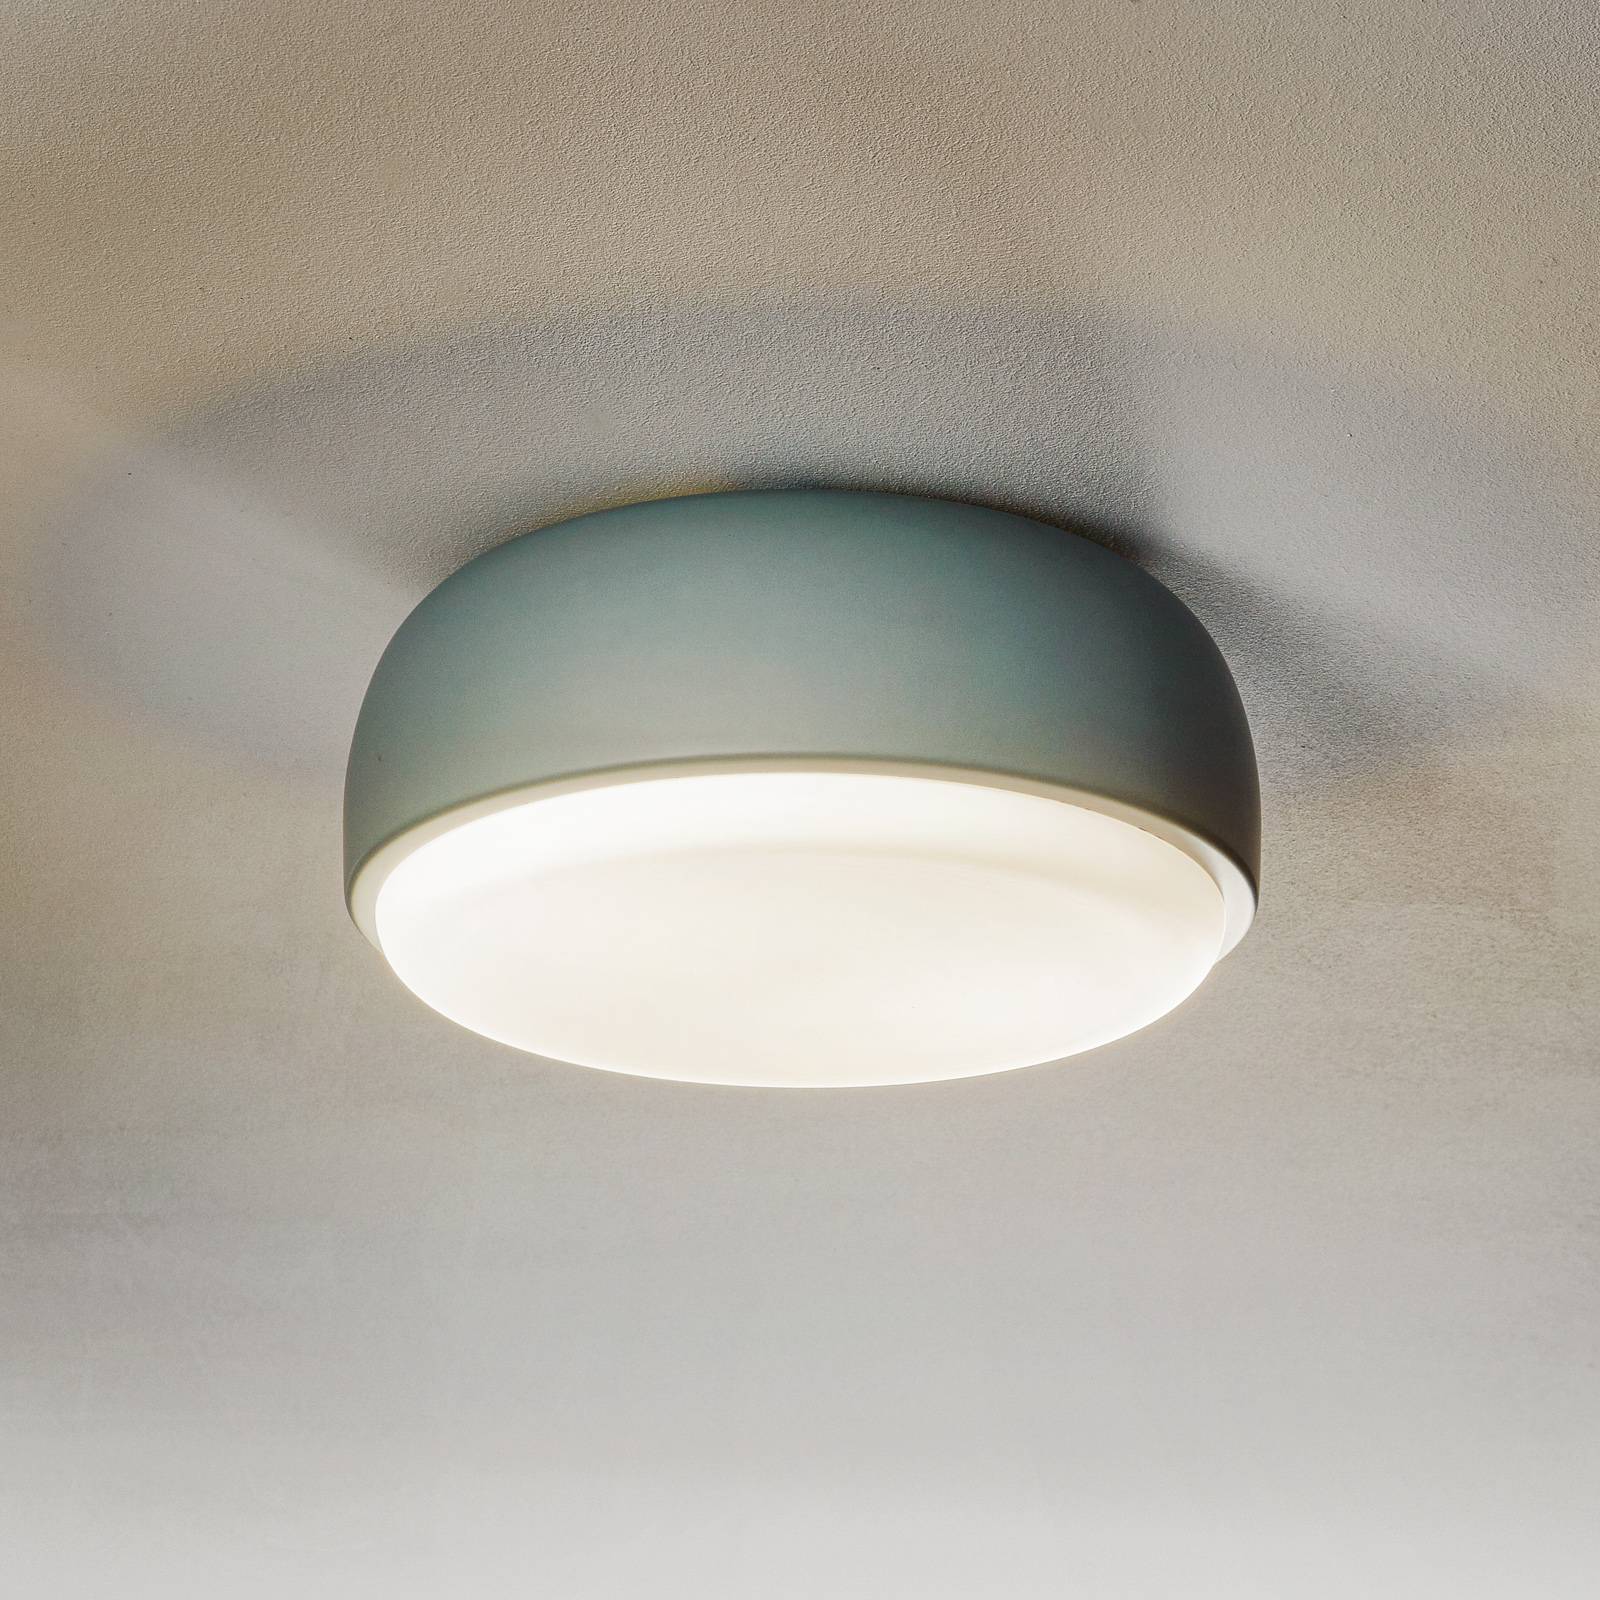 Versatile designer ceiling lamp Over Me, 30 cm